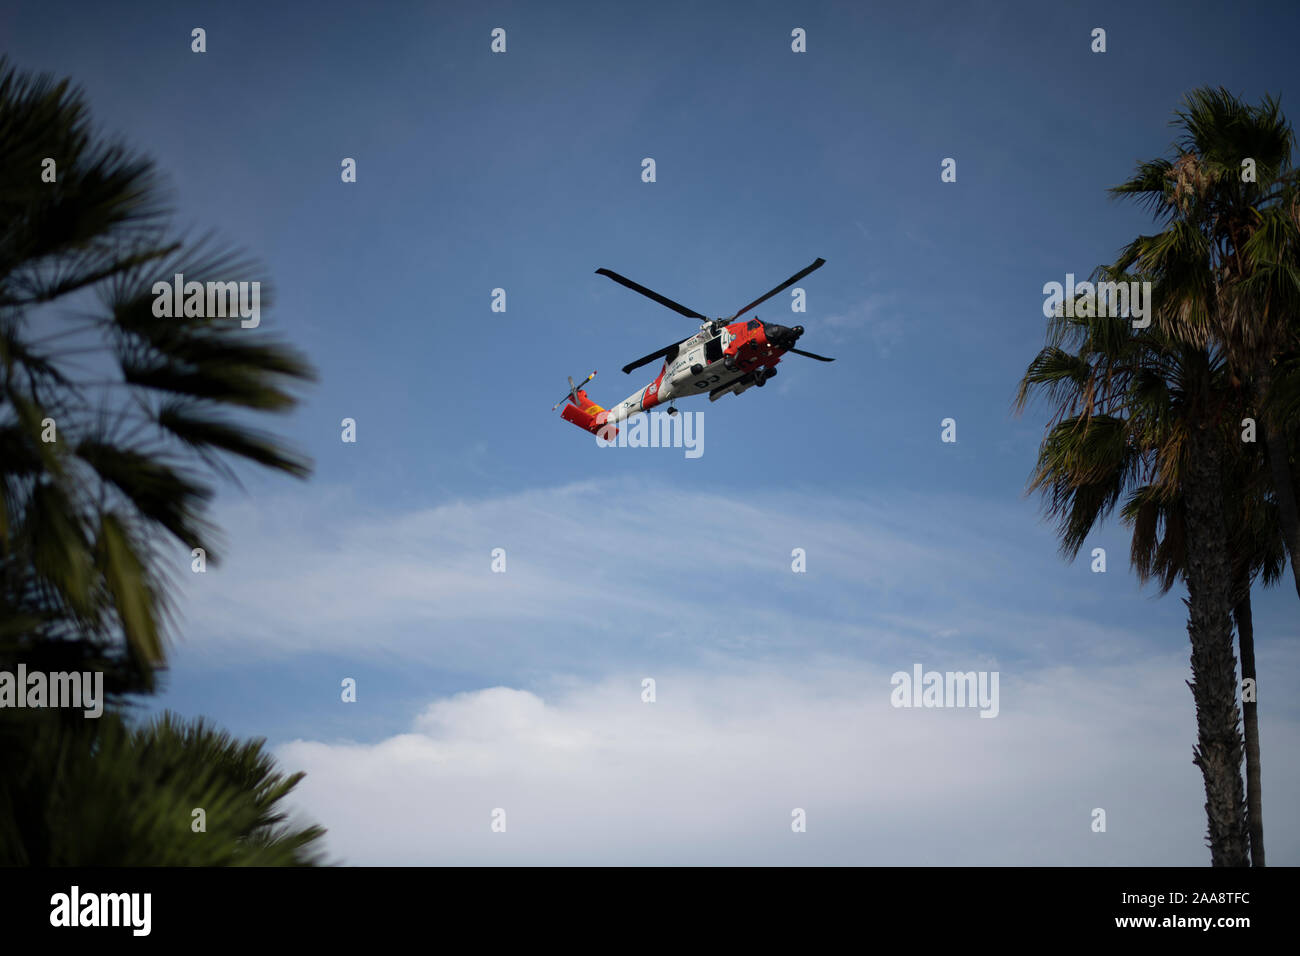 Coast Guard helicóptero volaba ablove palmeras en un día soleado Foto de stock